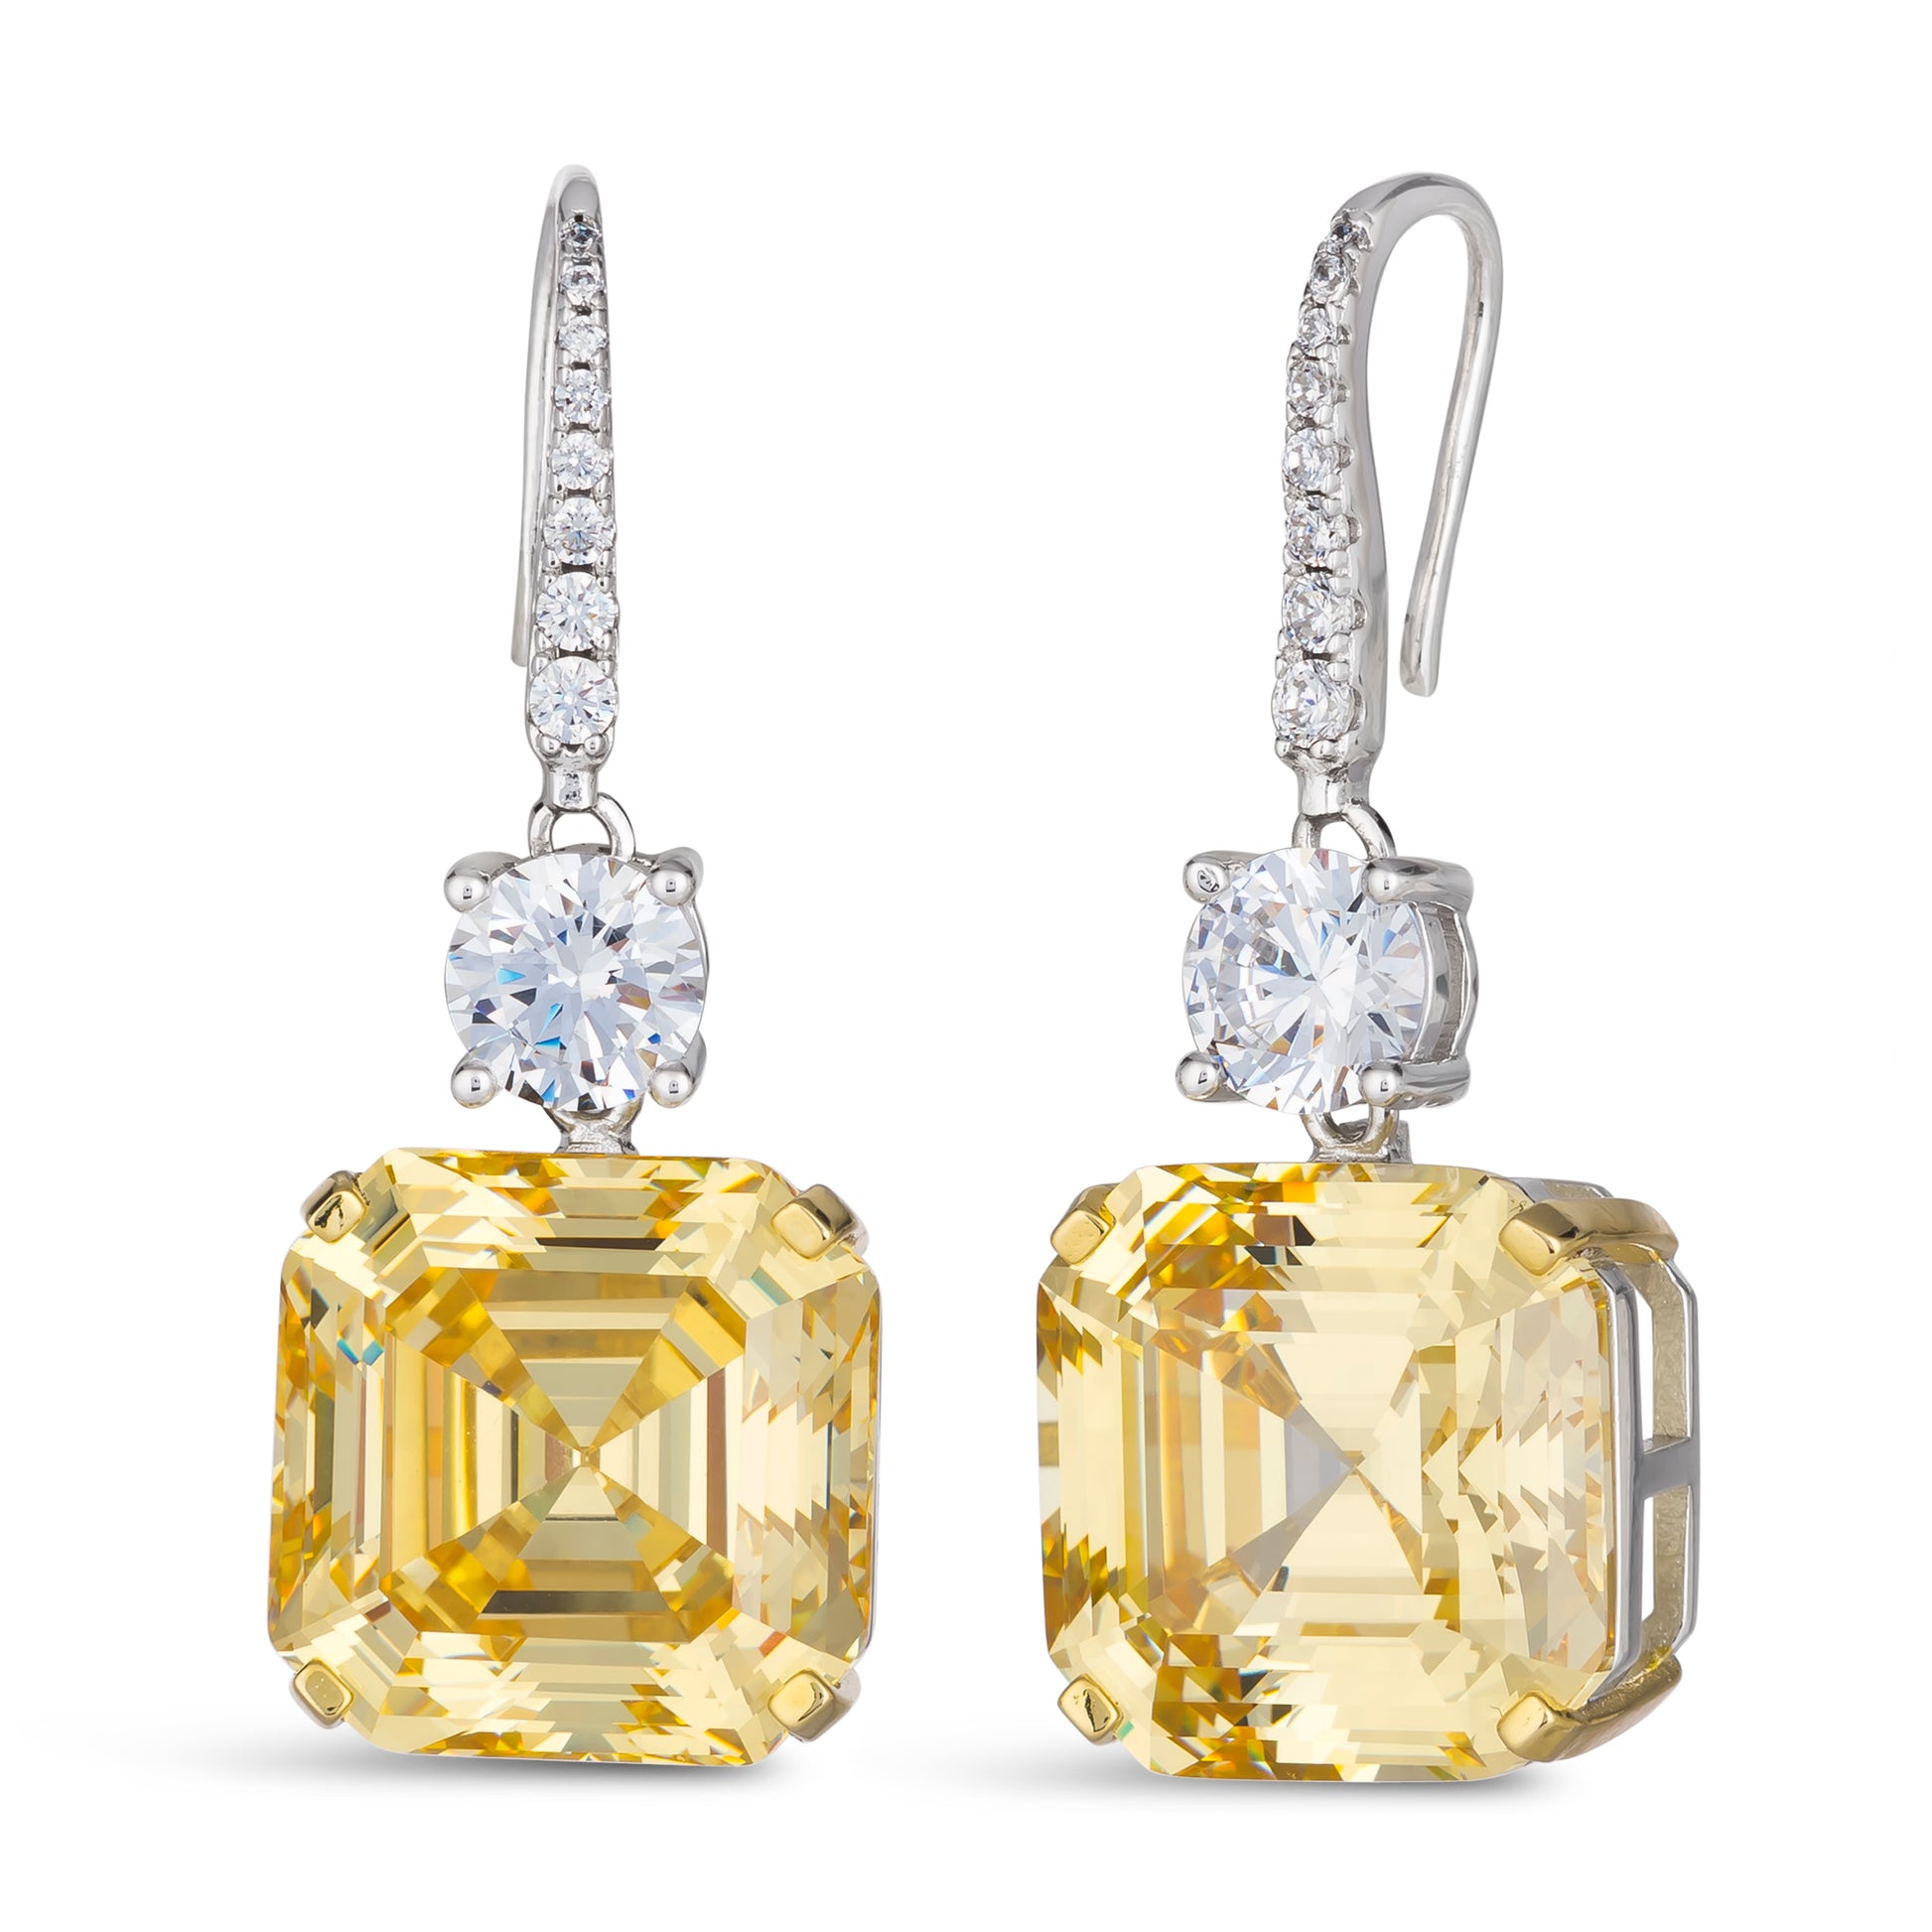 Arabella 12 Canary Yellow Earrings - Anna Zuckerman Luxury Earrings